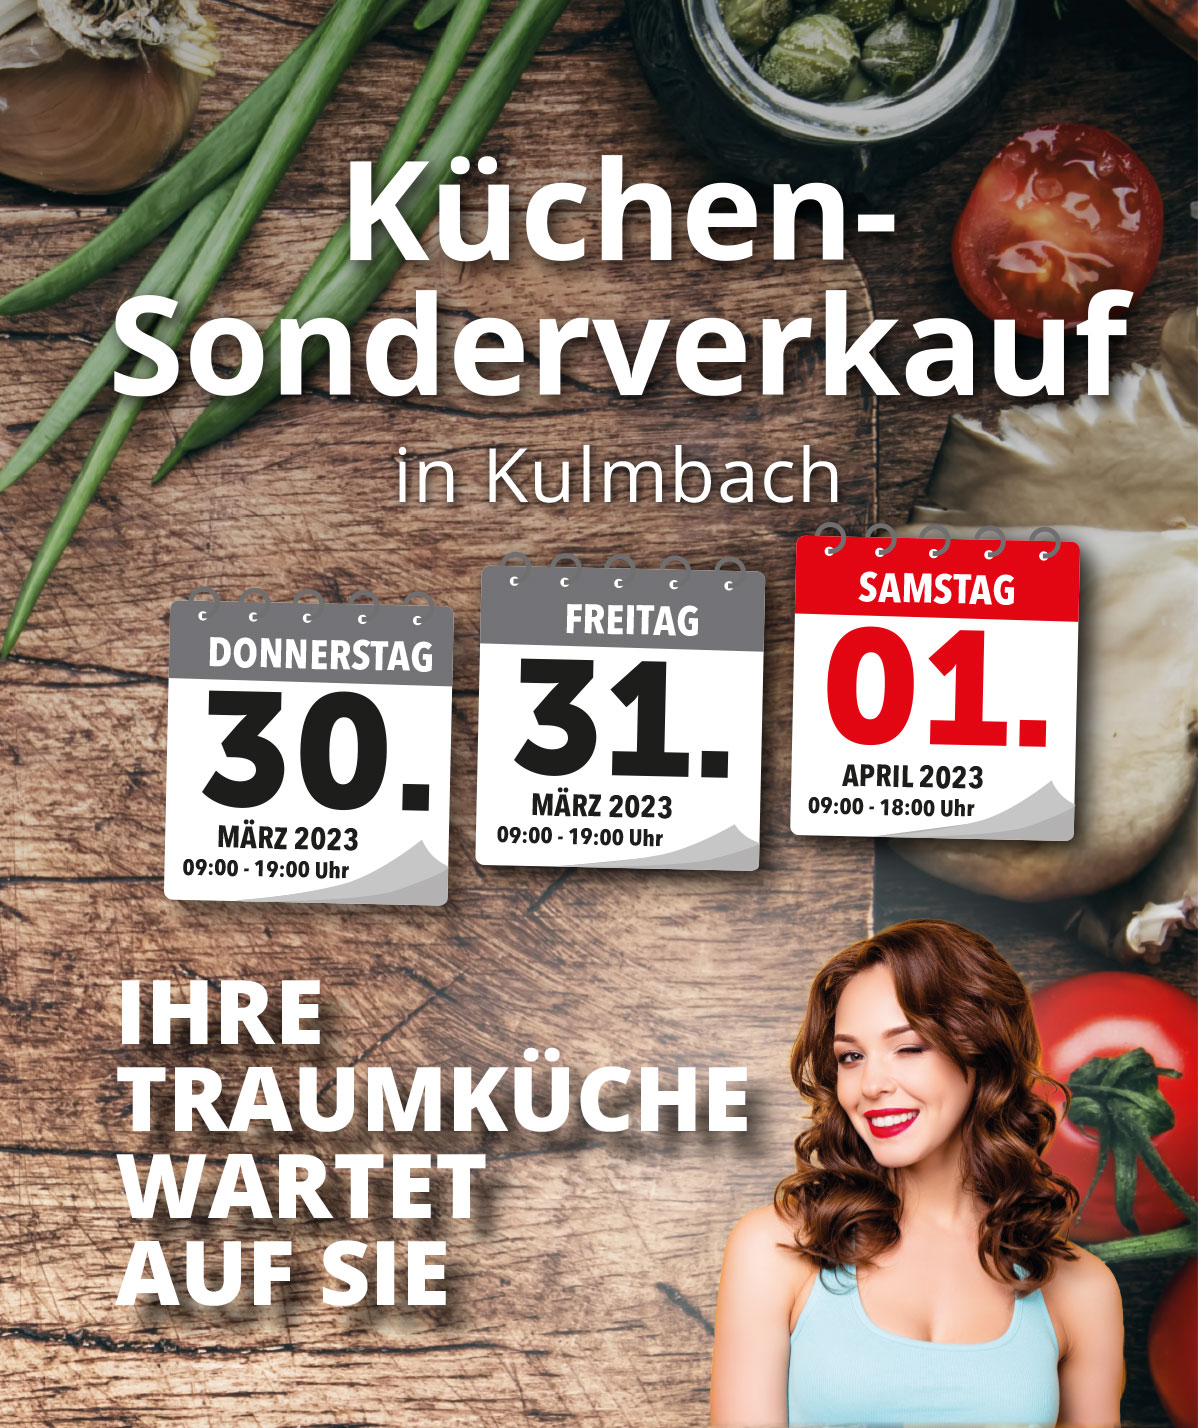 Großer Küchen-Sonderverkauf in Kulmbach vom 30. März bis 1. April 2023! Jetzt richtig sparen beim Küchenkauf!